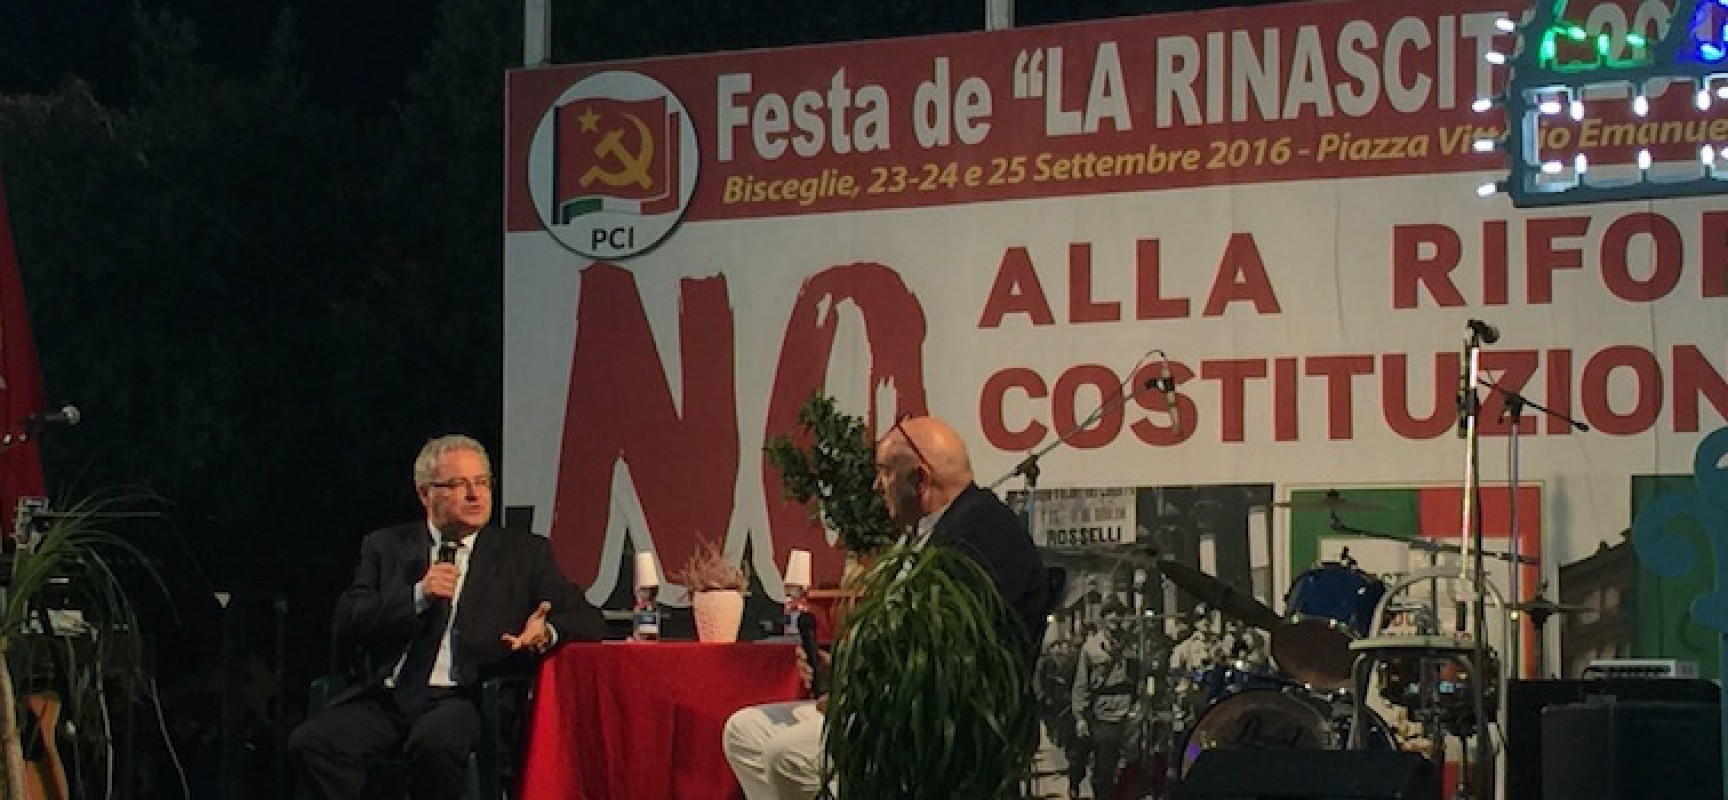 Napoletano chiude la Festa de La Rinascita: “Si lavori per coalizione di sinistra, anche con le primarie”